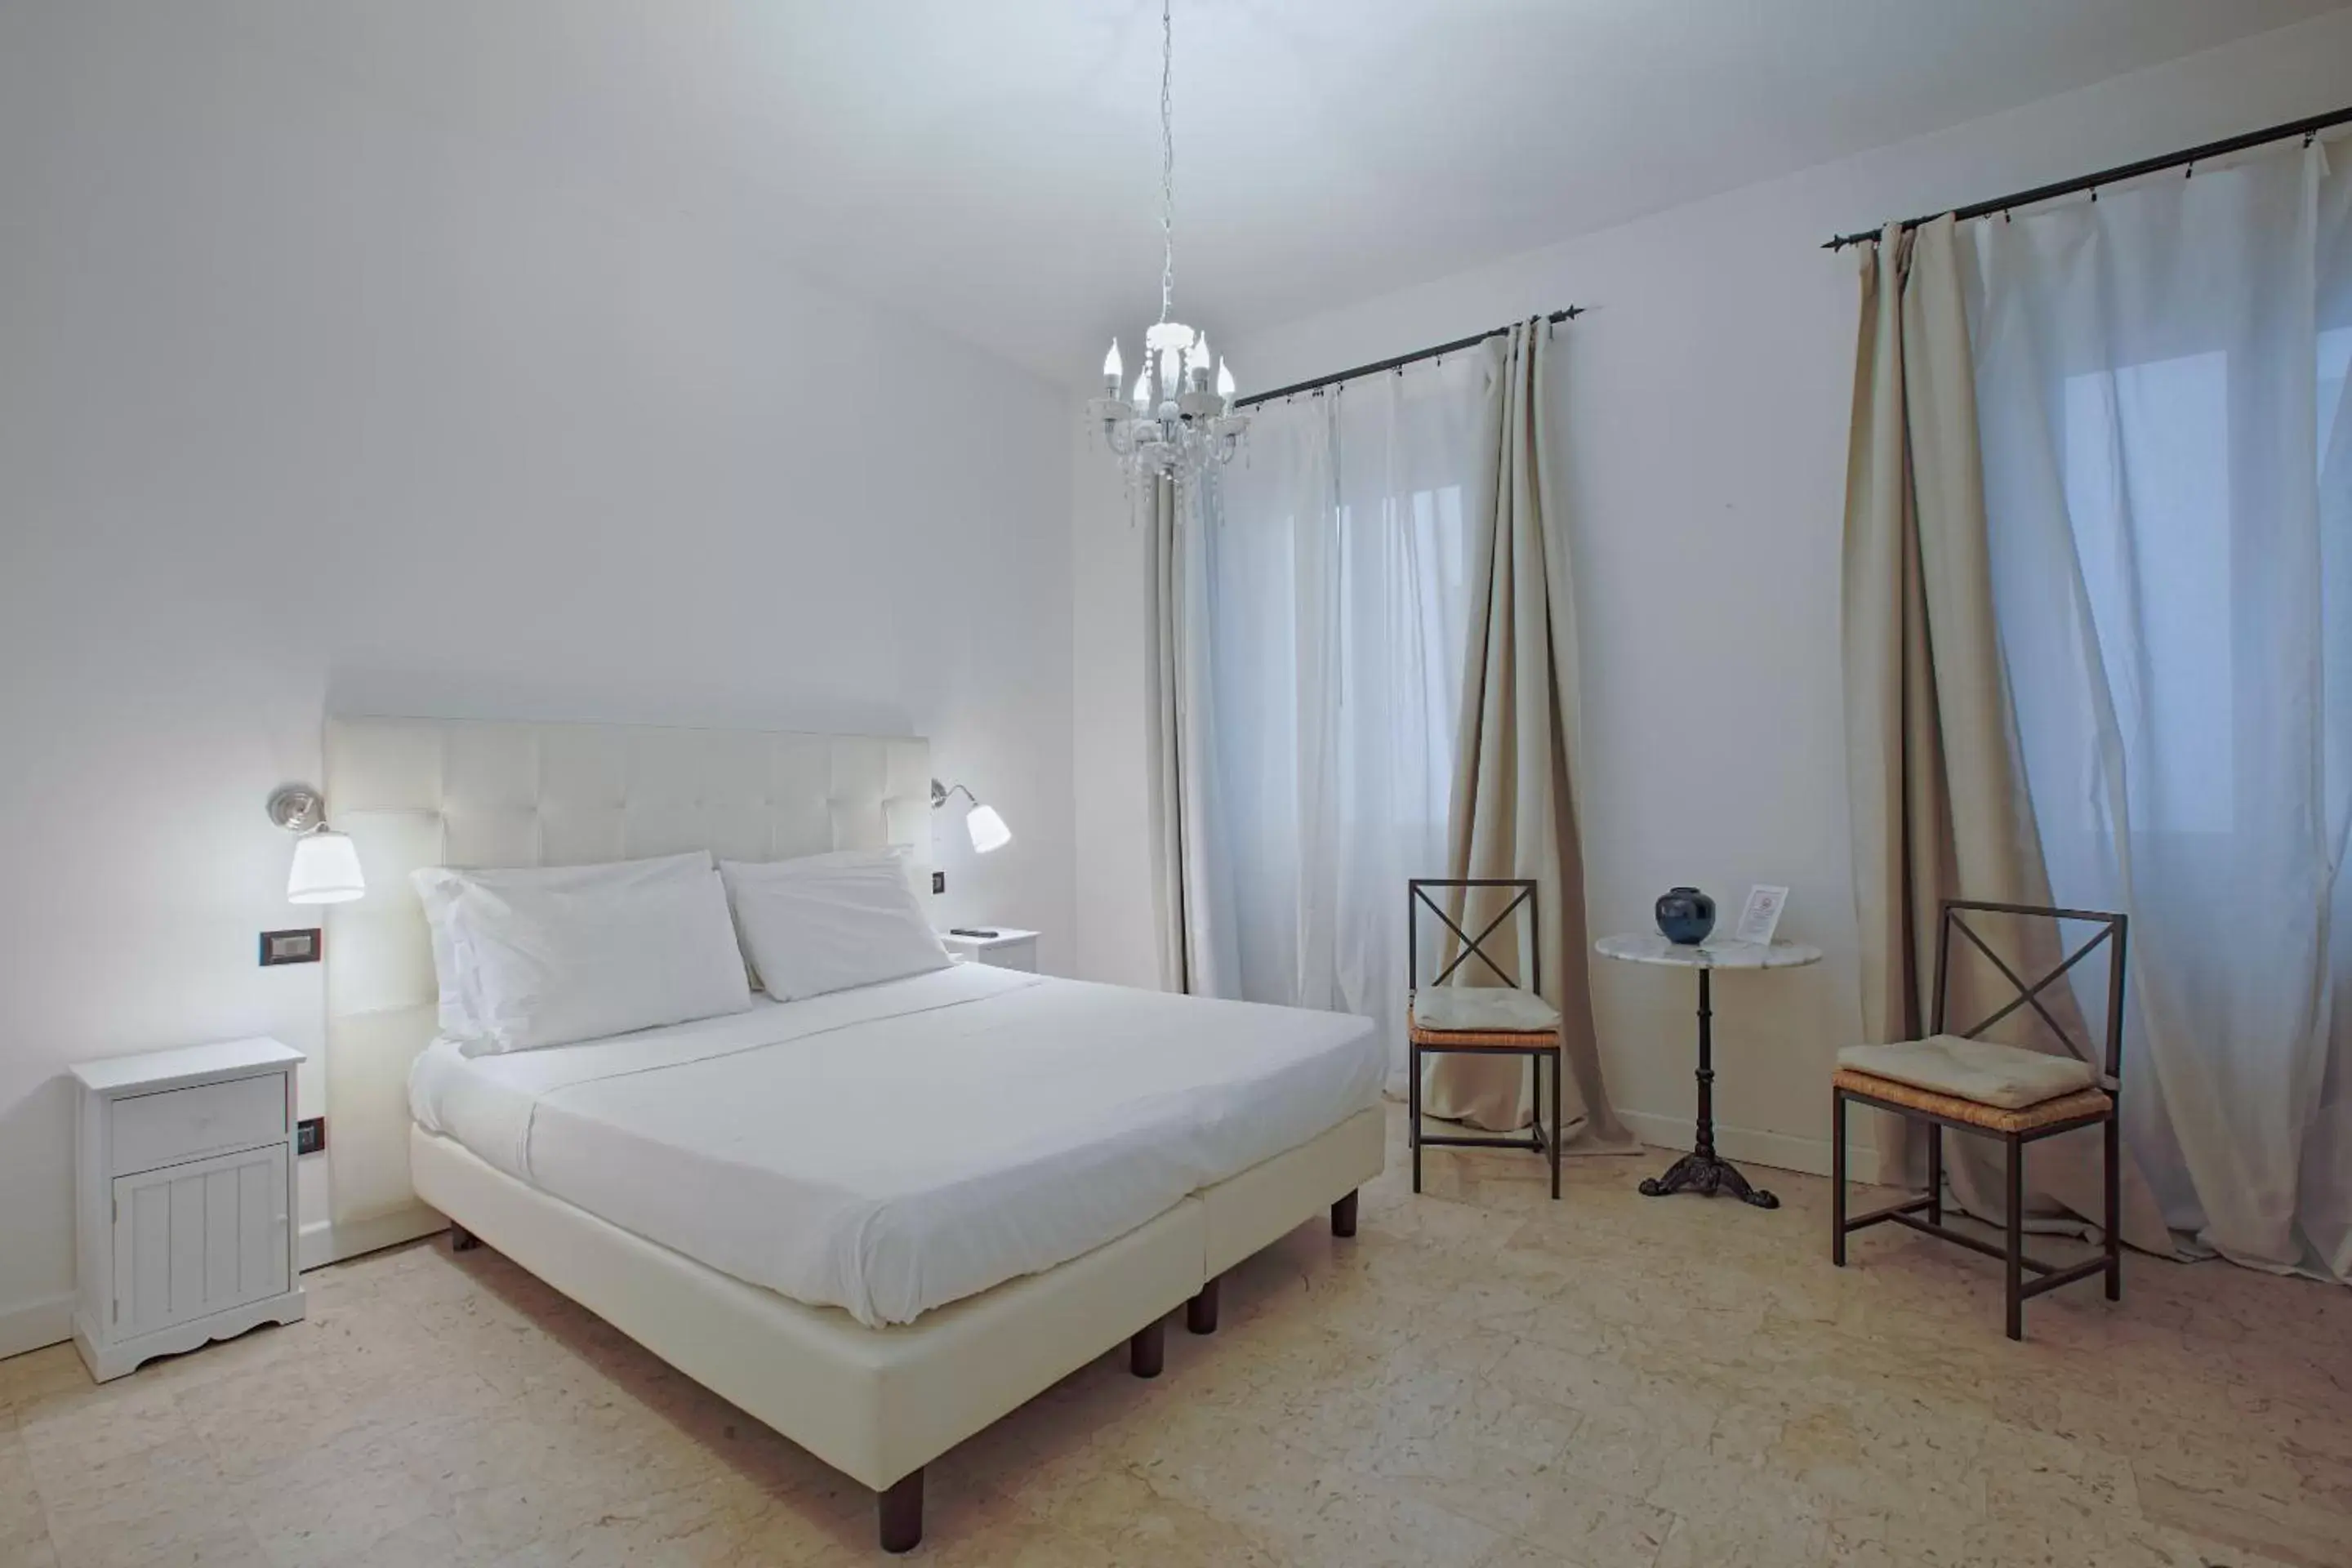 Bed in Badia Fiorentina